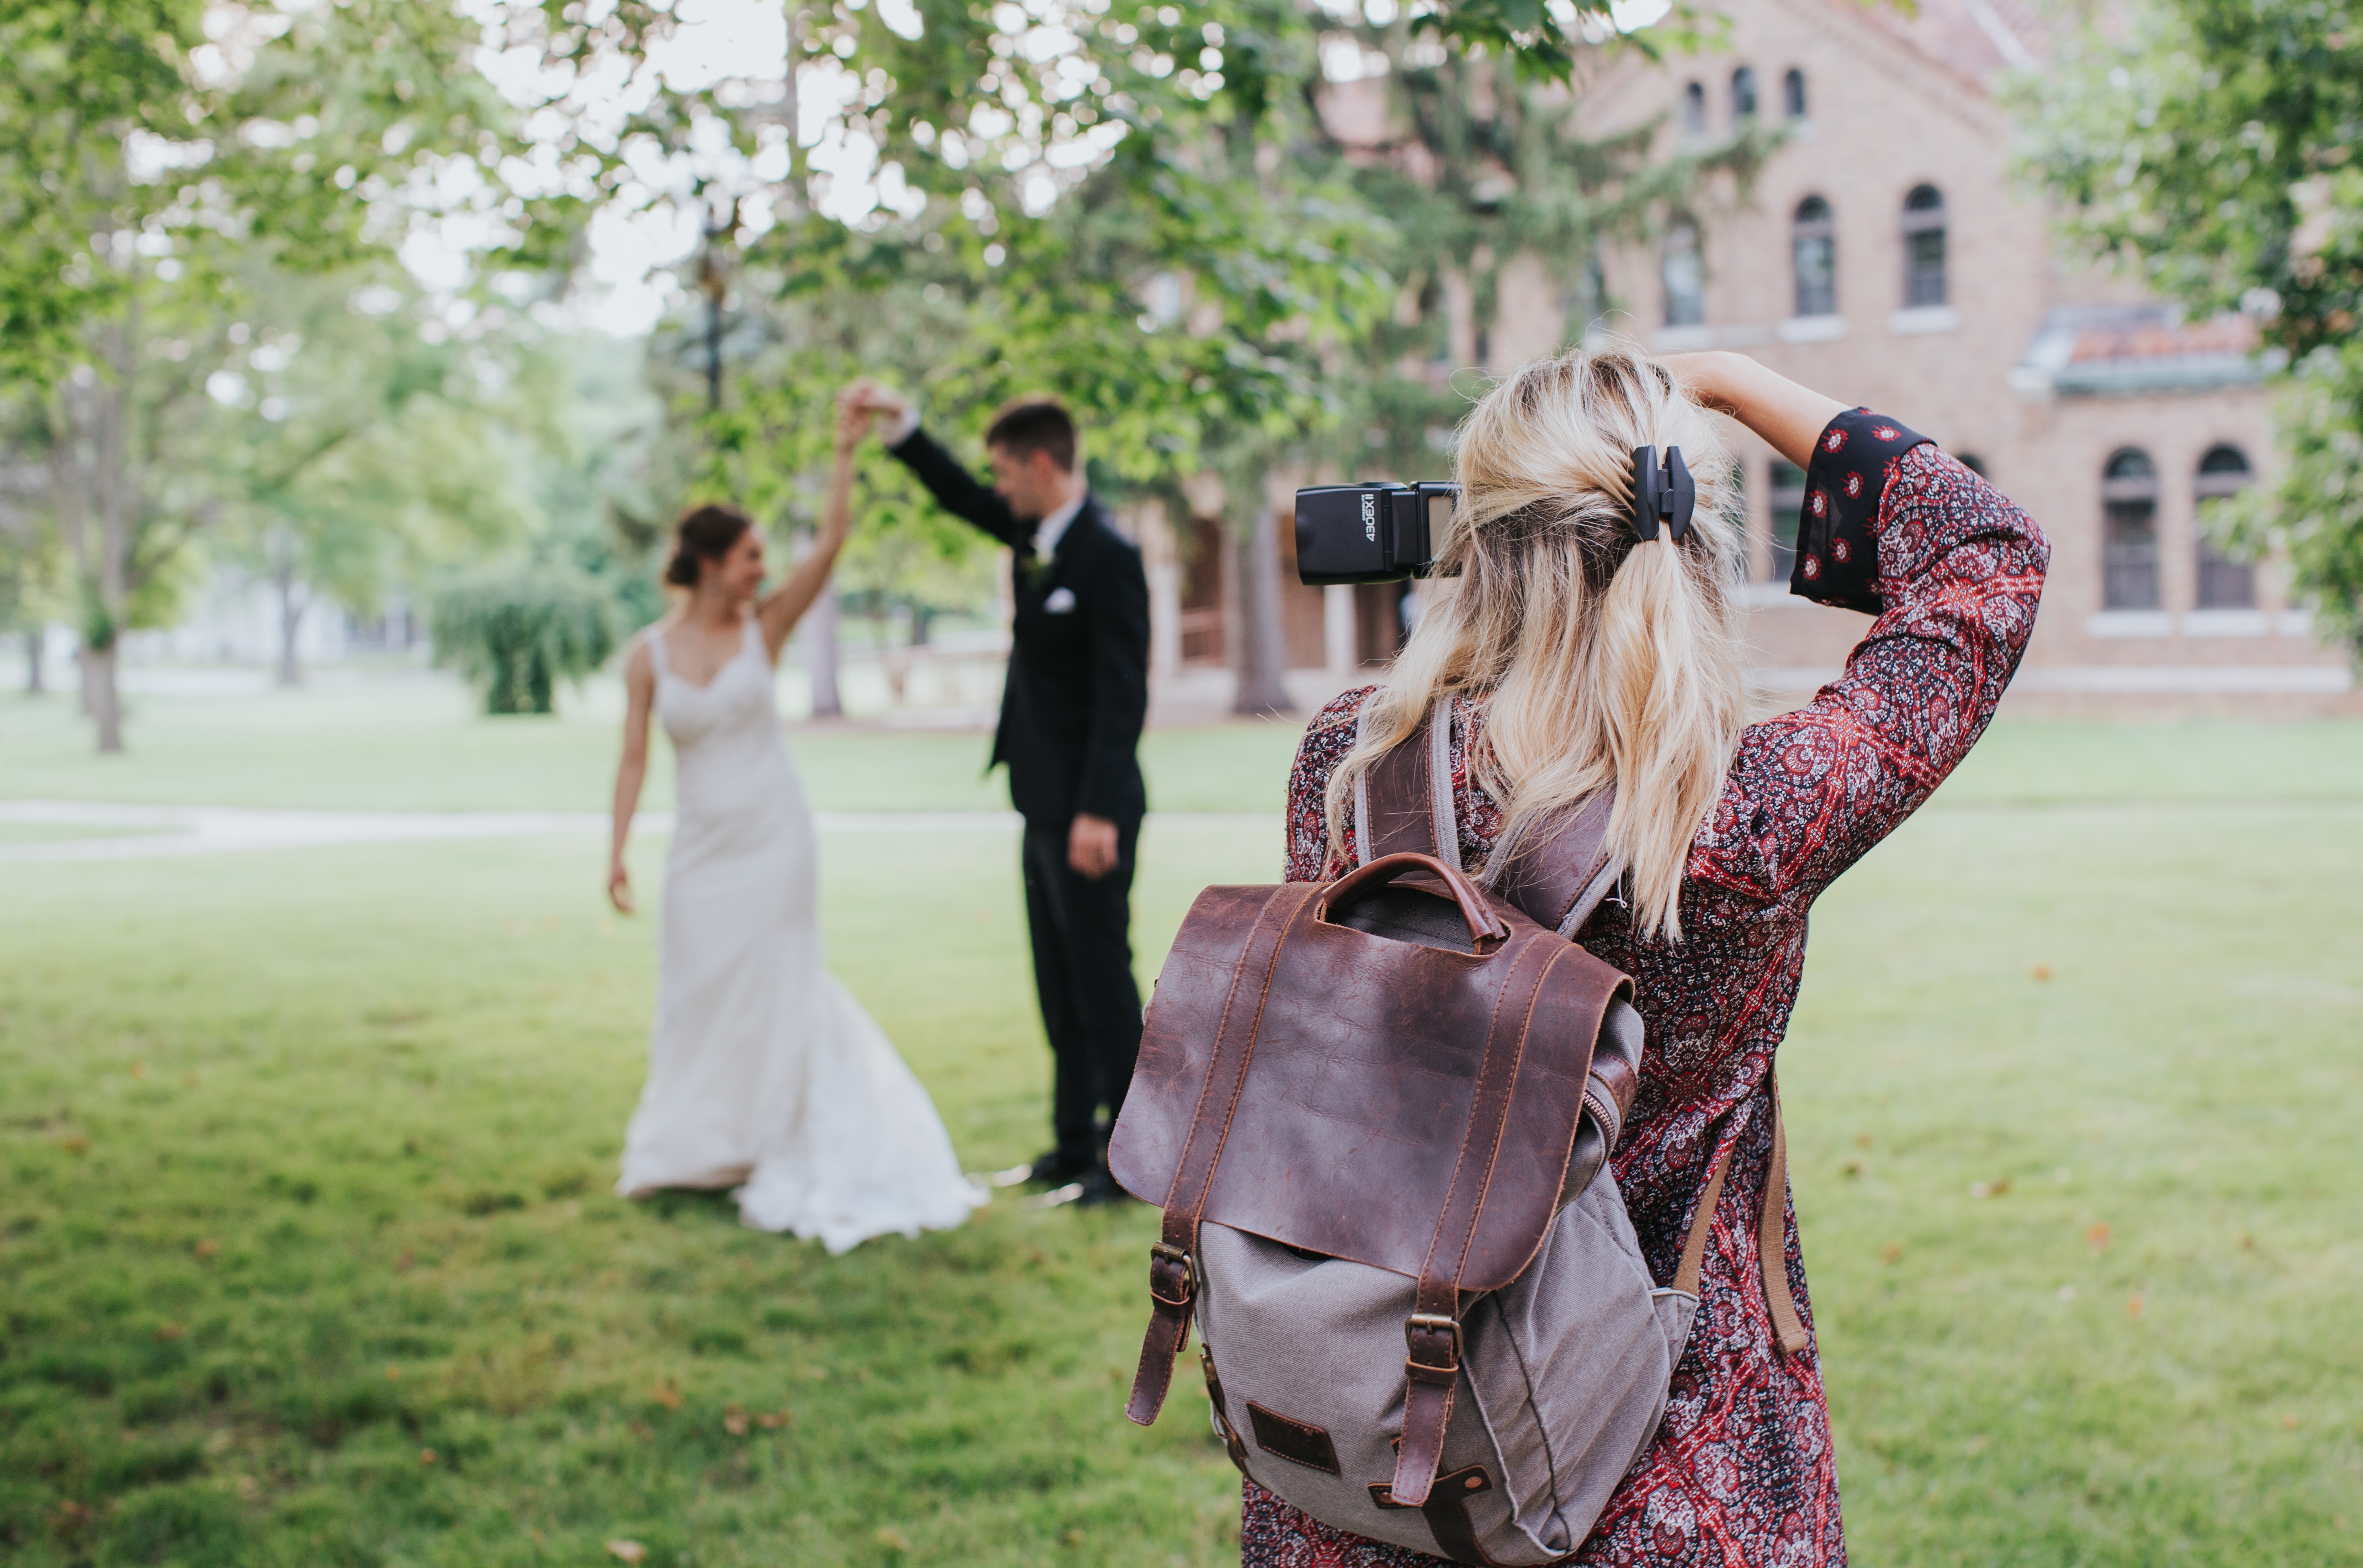 Fotografin macht Bilder von Hochzeitspaar in Gartenlandschaft.